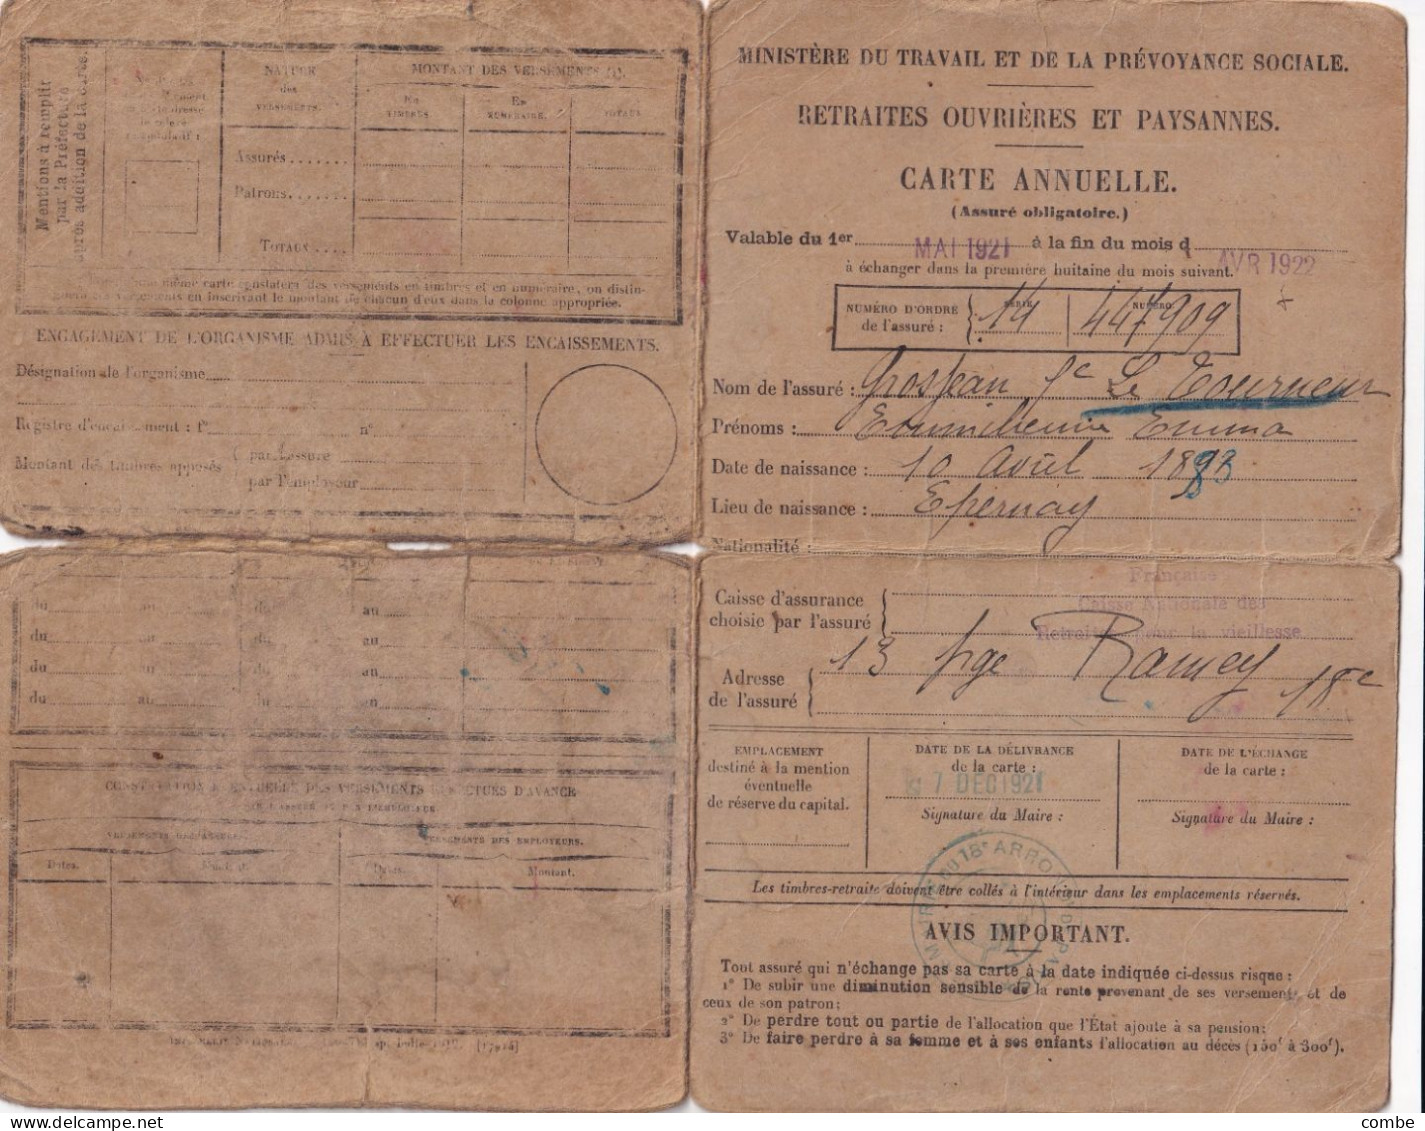 CARNET. MINISTERE DU TRAVAIL. RETRAITES OUVRIERES ET PAYSANNES. 7 DEC 1921. XVIII° ARRONDISSEMENT PARIS - Covers & Documents